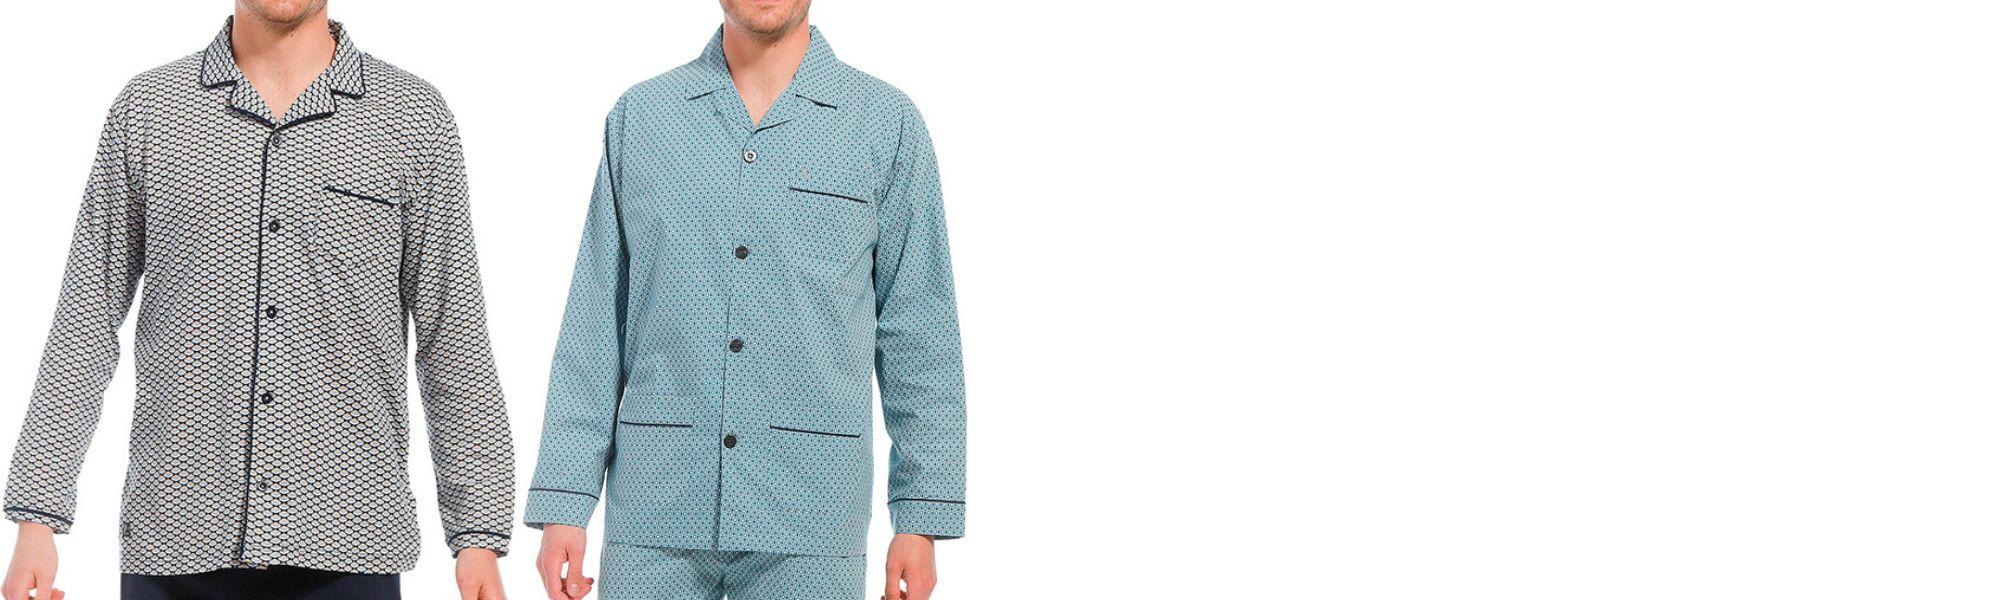 Stijlvolle pyjama's met knopen voor heren